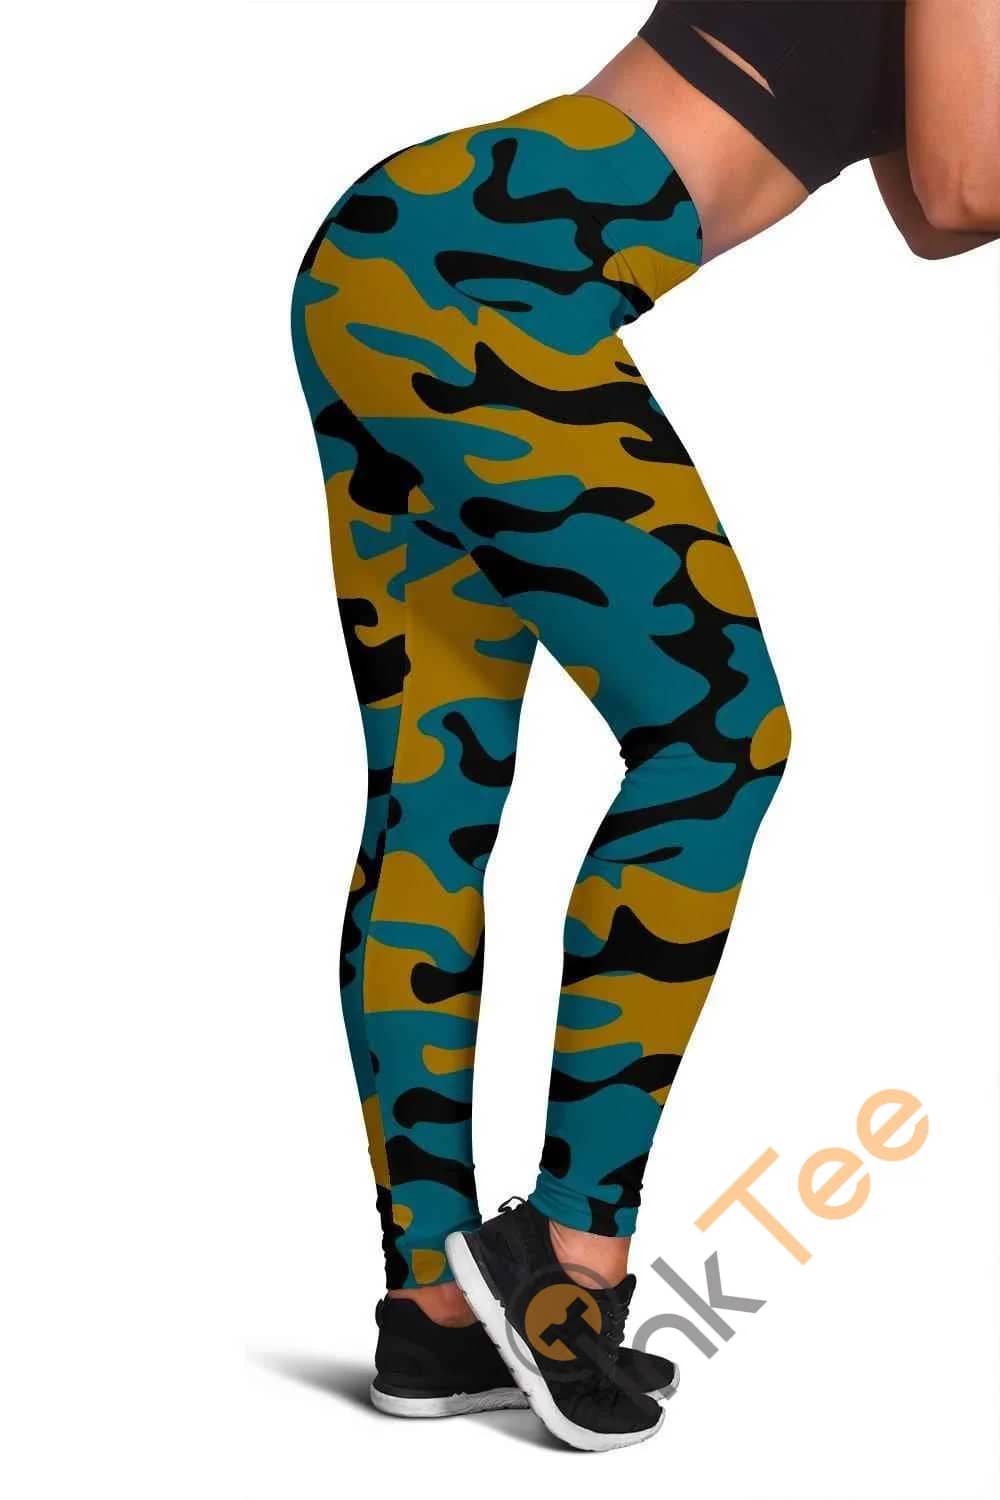 Jacksonville Jaguars Inspired Tru Camo 3D All Over Print For Yoga Fitness Fashion Women'S Leggings